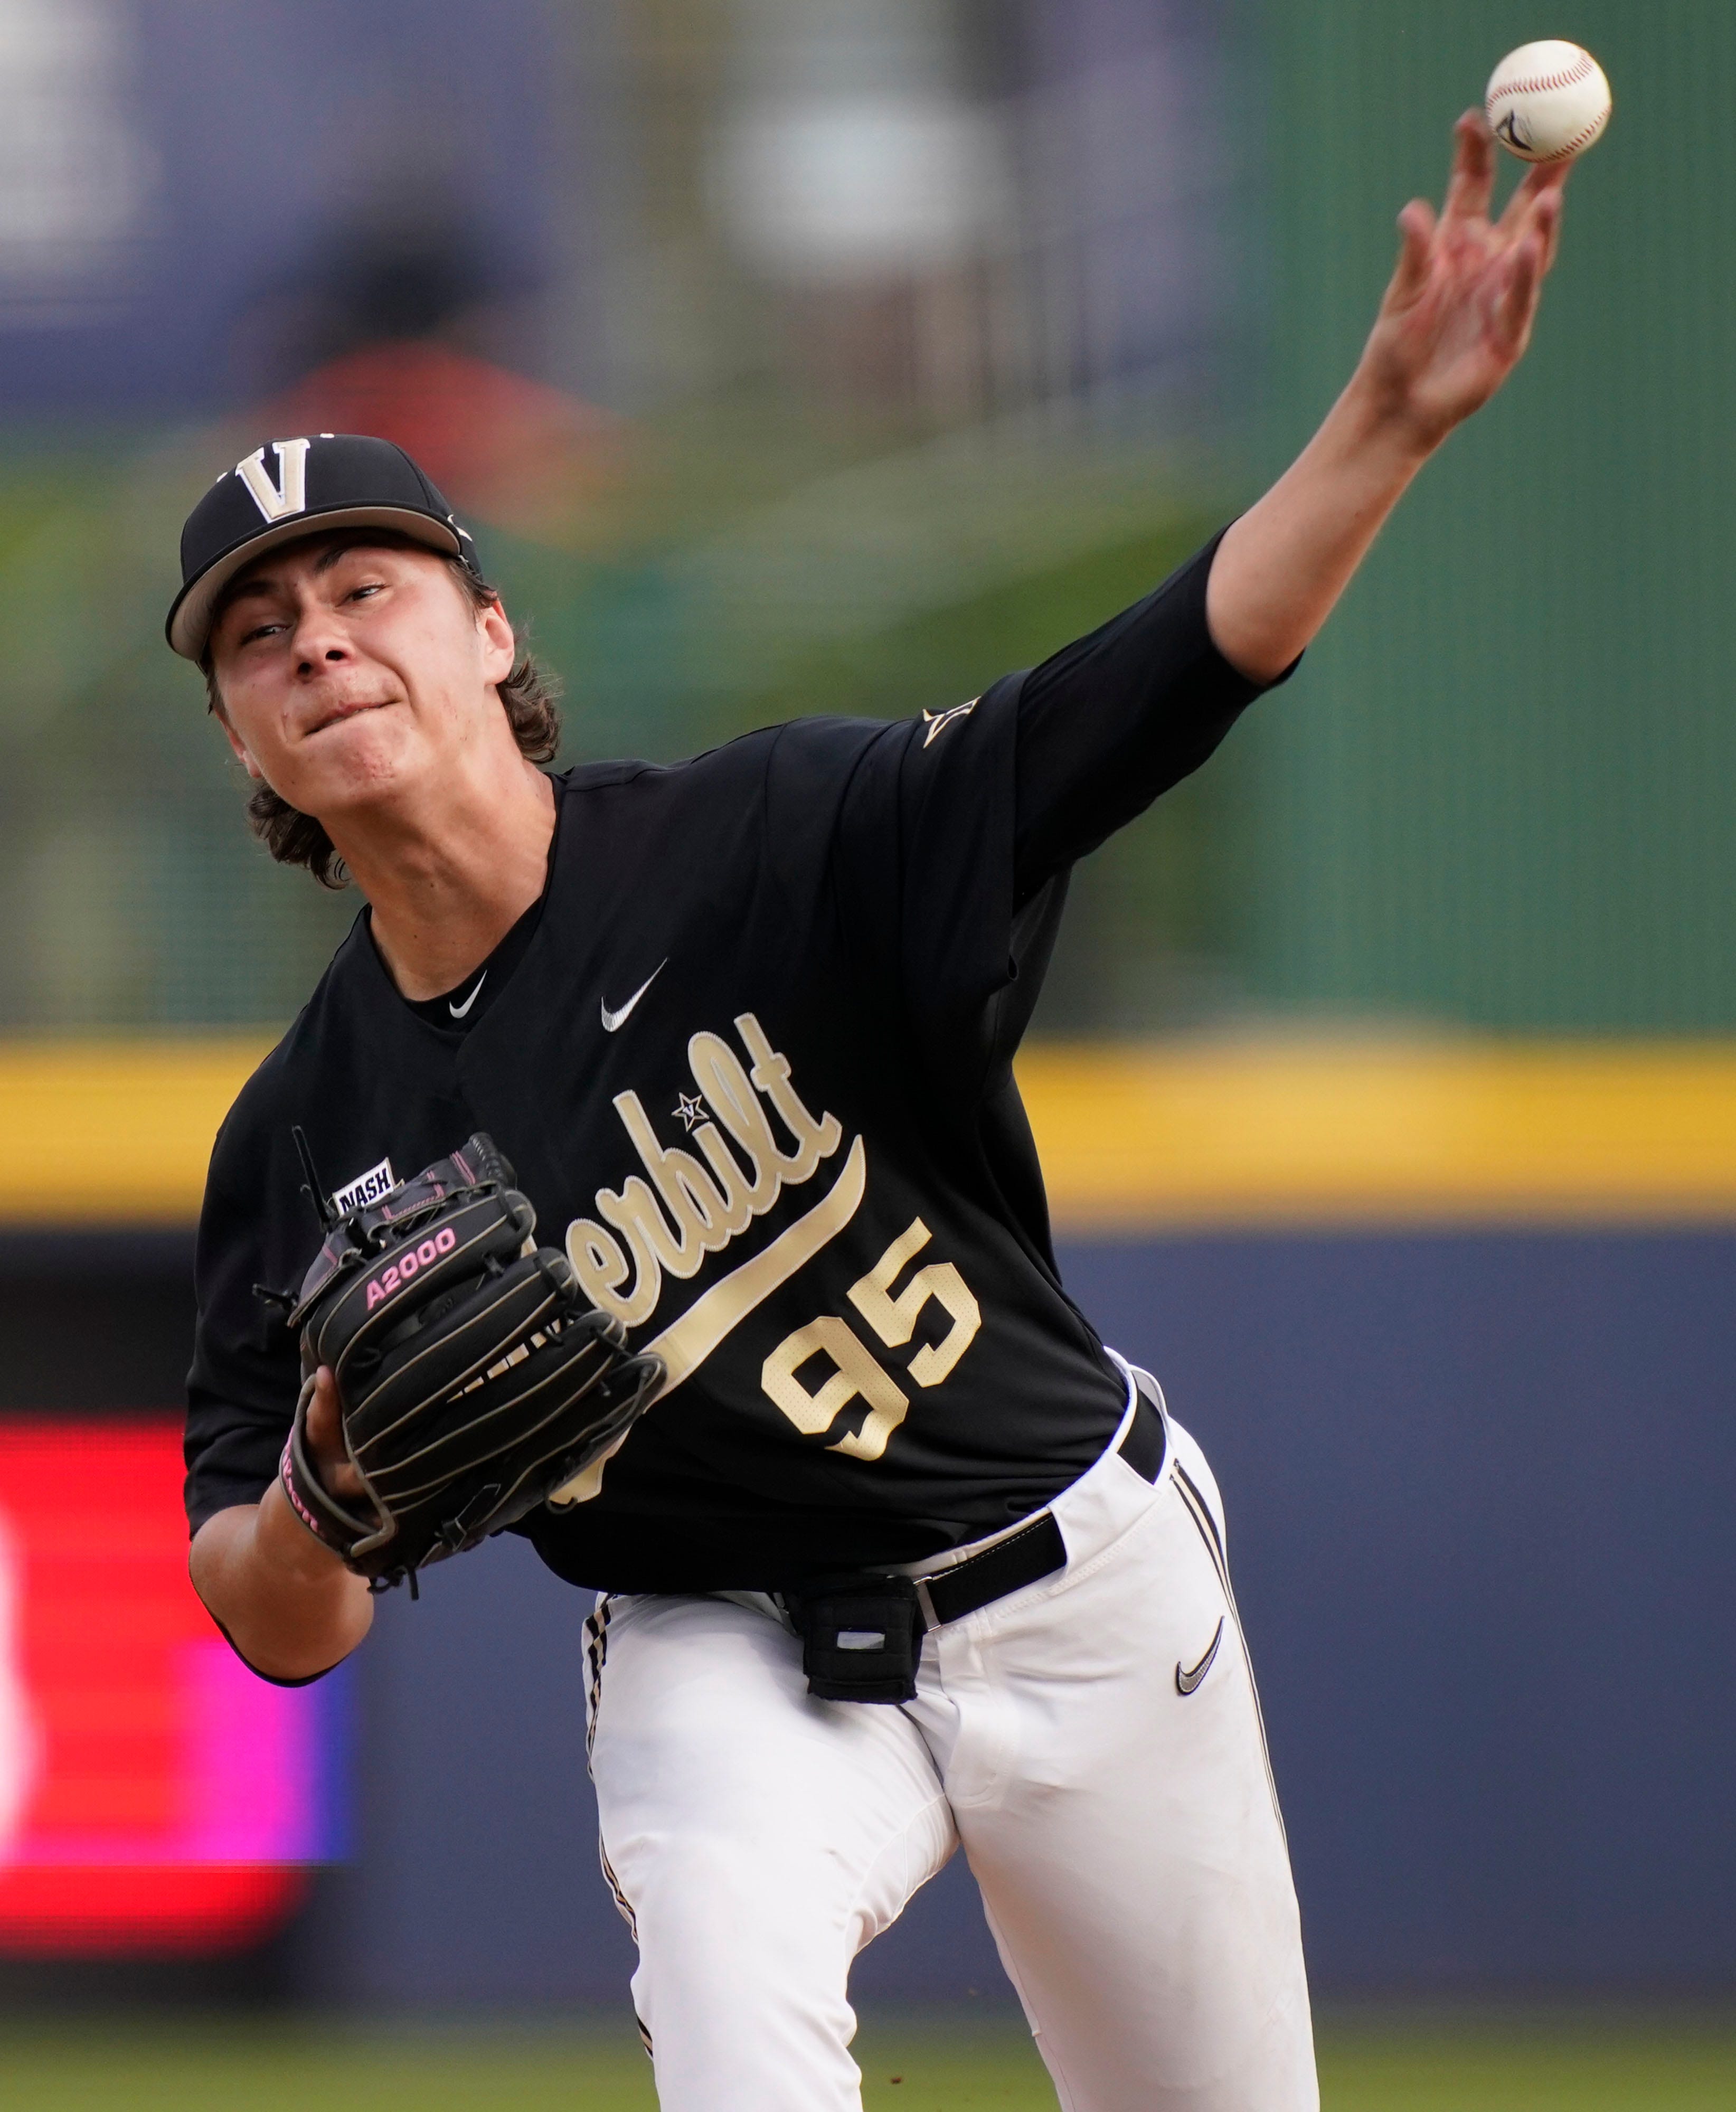 Devin Futrell to start for Vanderbilt baseball vs. Texas in the College Baseball Showdown